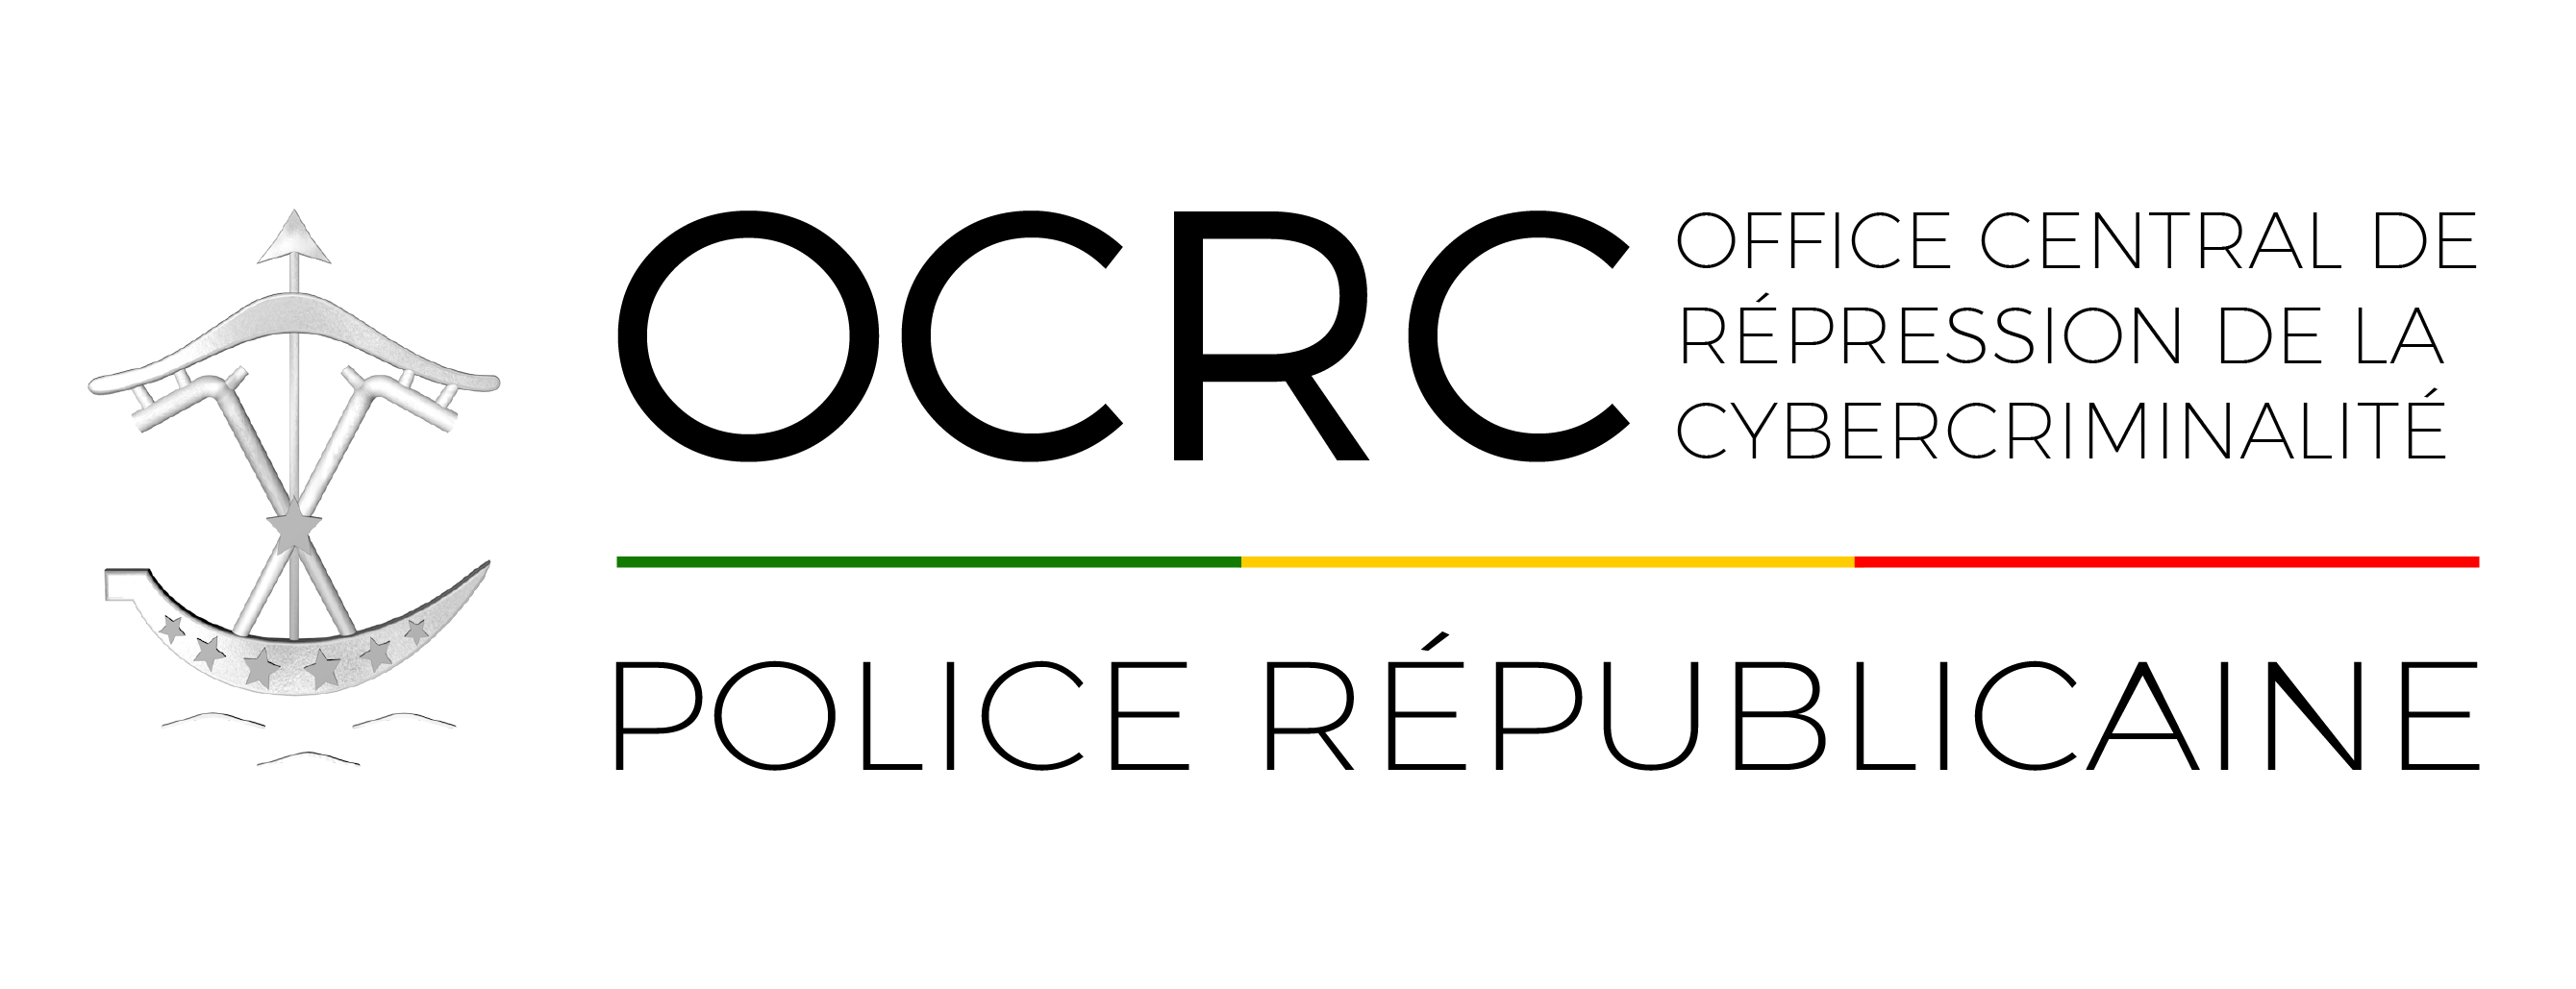 Logo de l'Office central de répression de la cybercriminalité